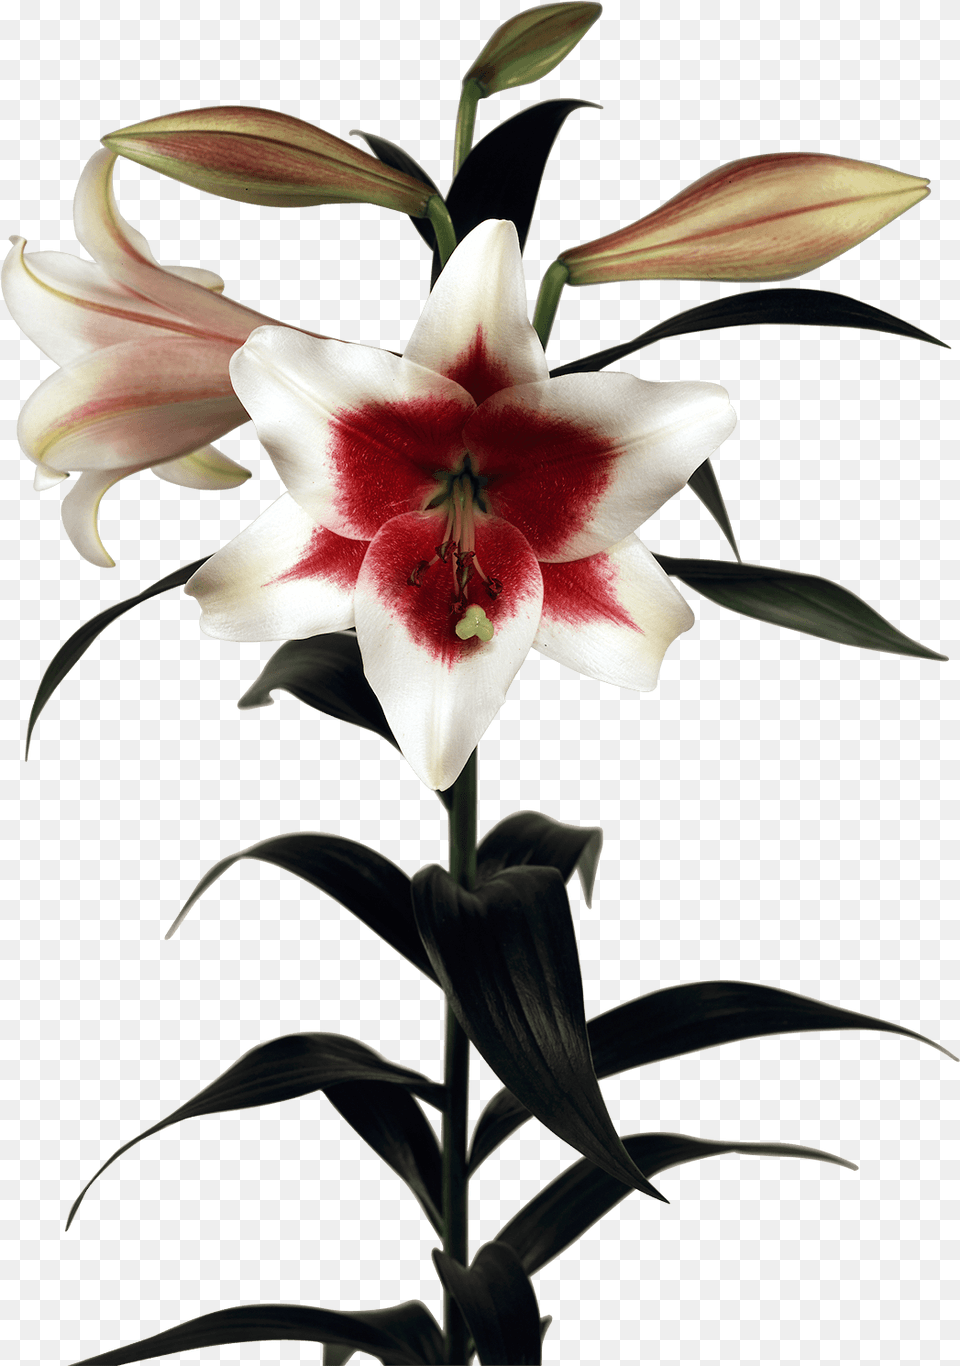 Triumphator Lily, Flower, Plant, Petal Free Transparent Png